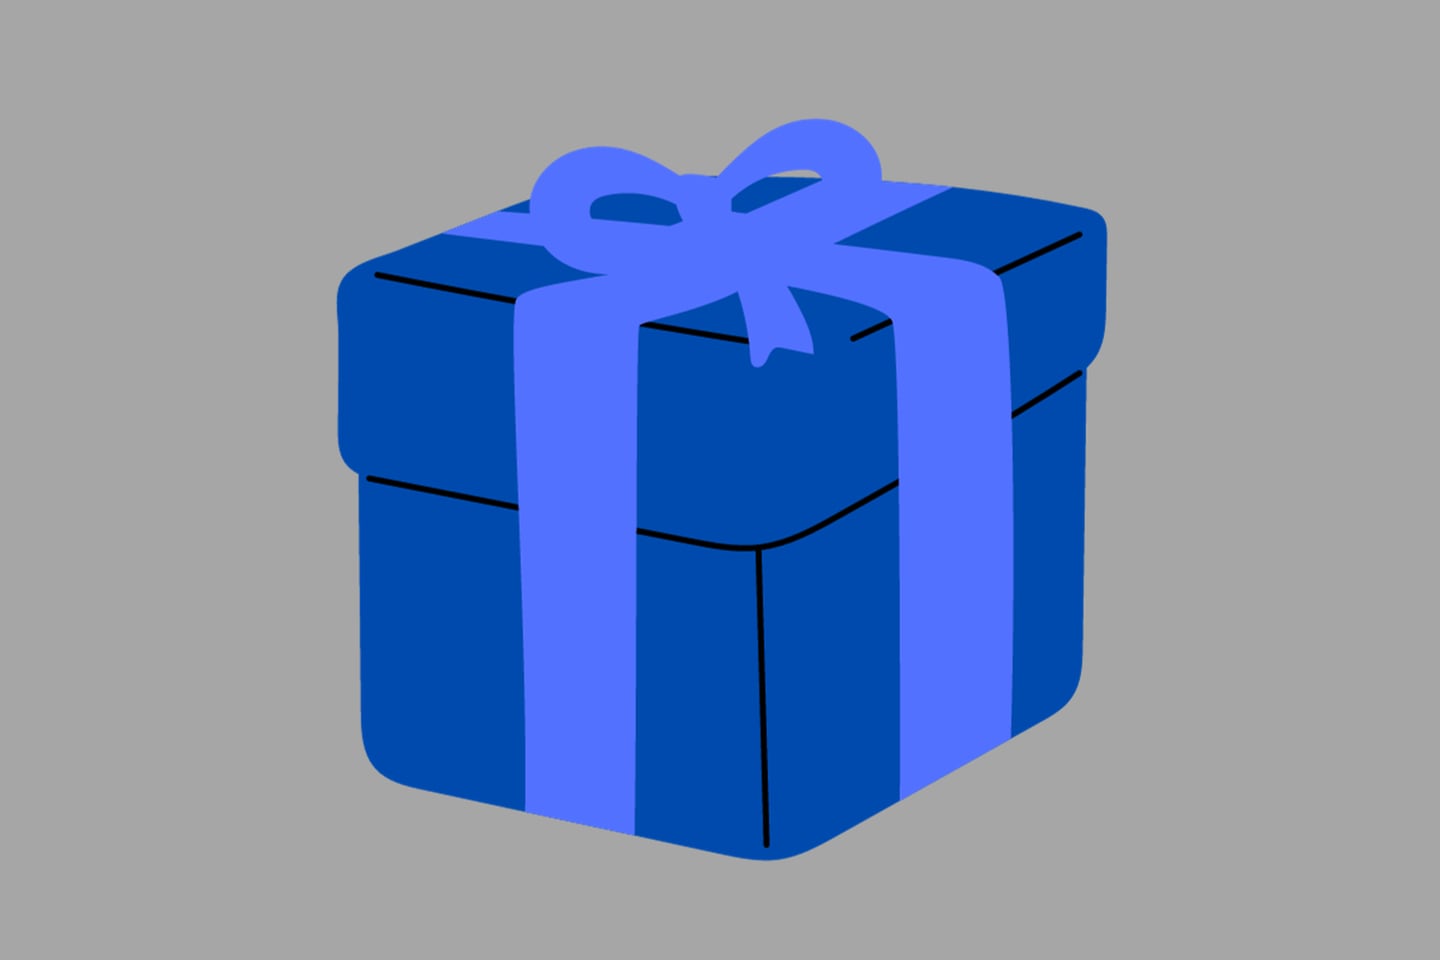 En este test visual se ve una caja de regalo azul.